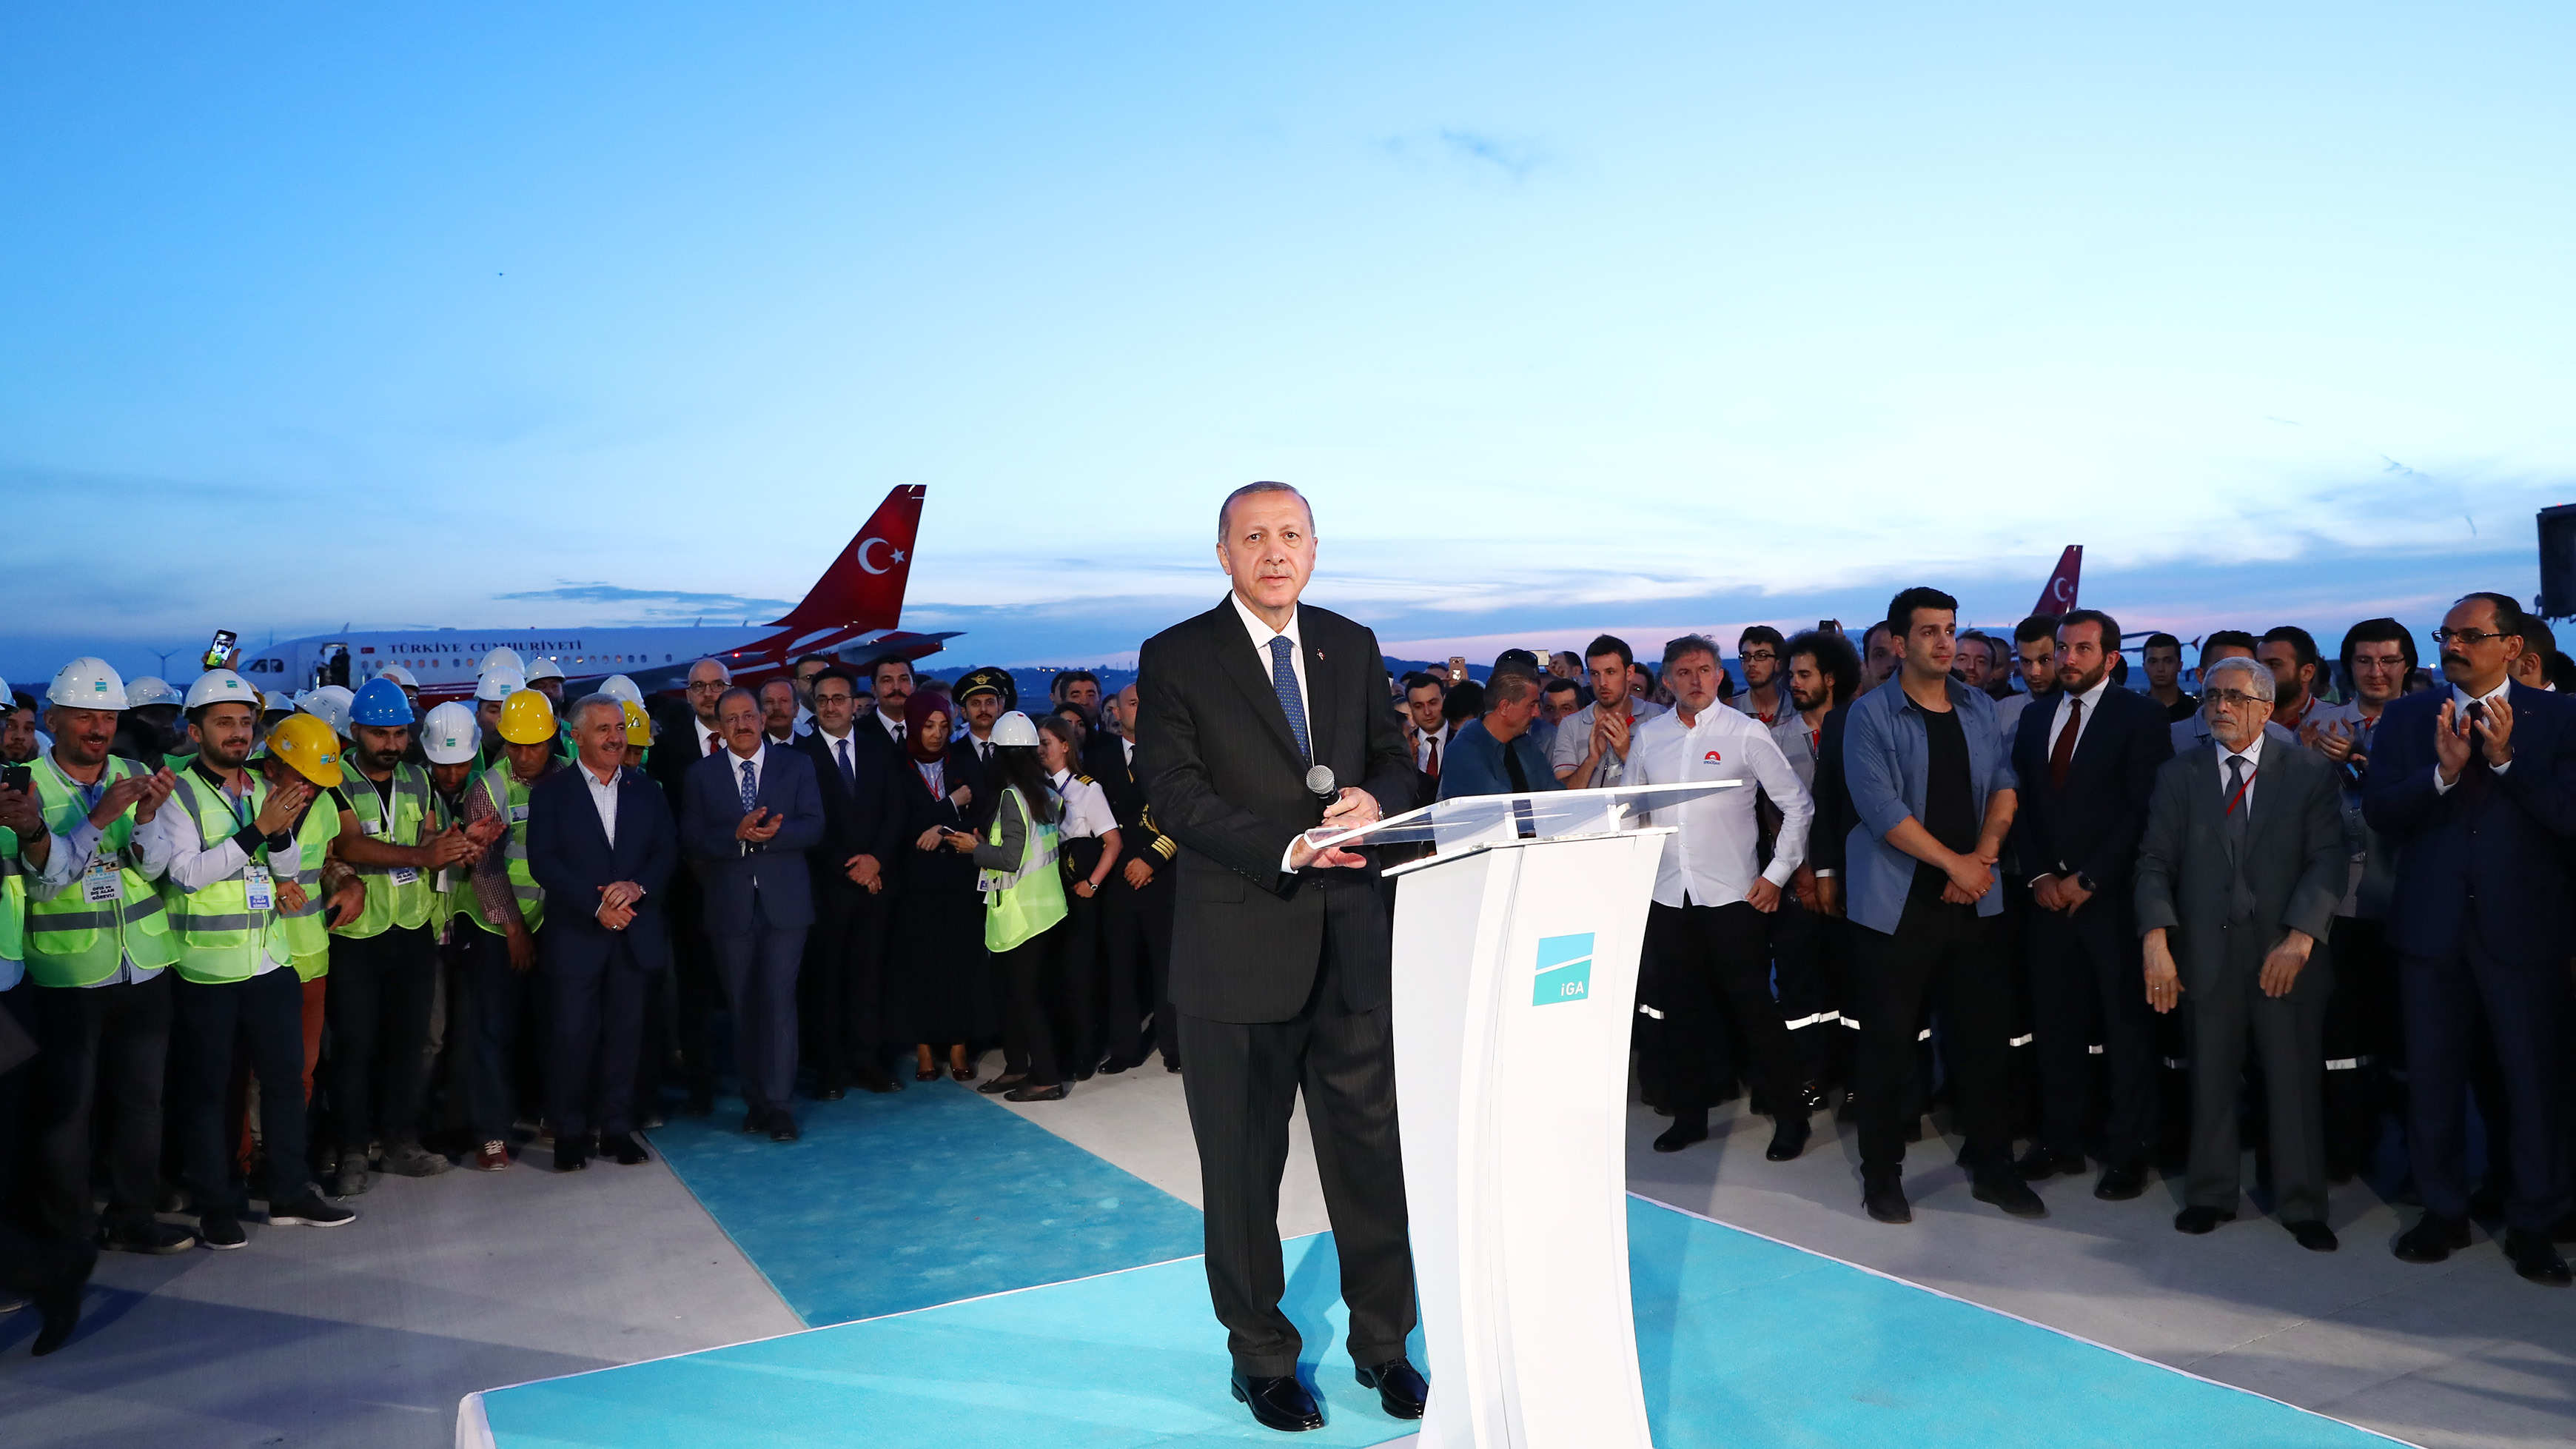  İstanbul Havalimanı 3. pisti açıldı, ilk uçuş iznini canlı yayında Cumhurbaşkanı Erdoğan verdi.